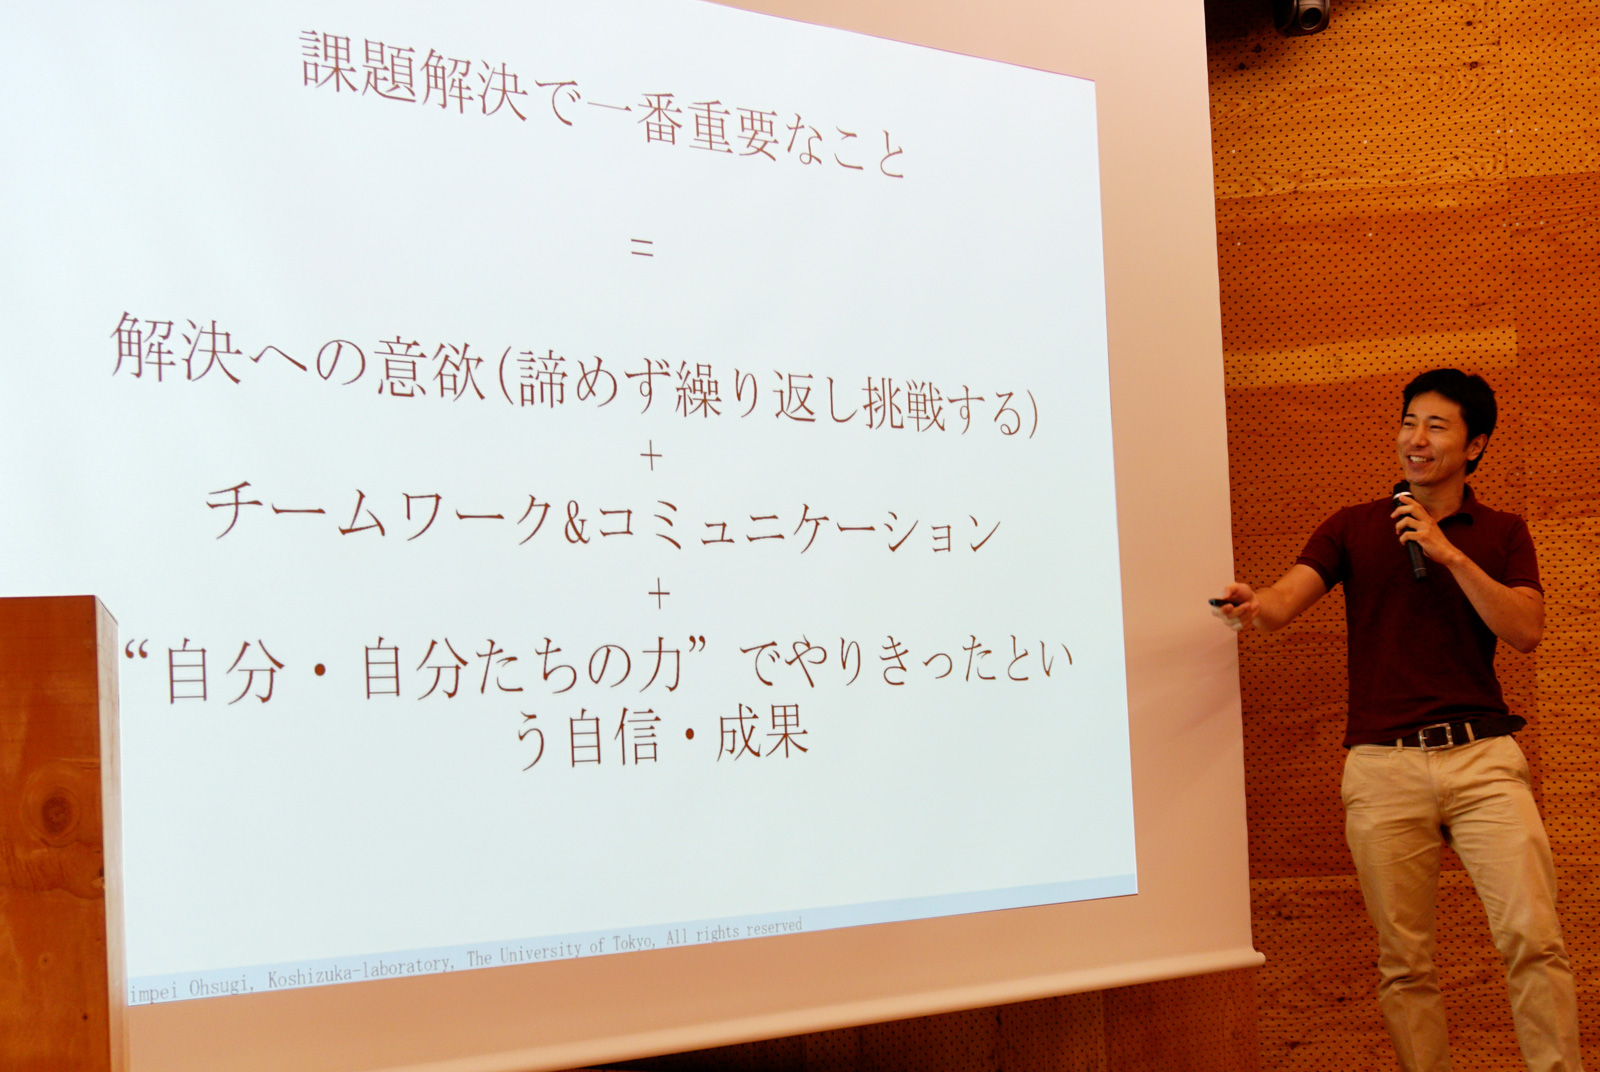 課題解決型のプログラミング教室で重視したポイントを説明する東京大学学際情報学府 大杉慎平氏